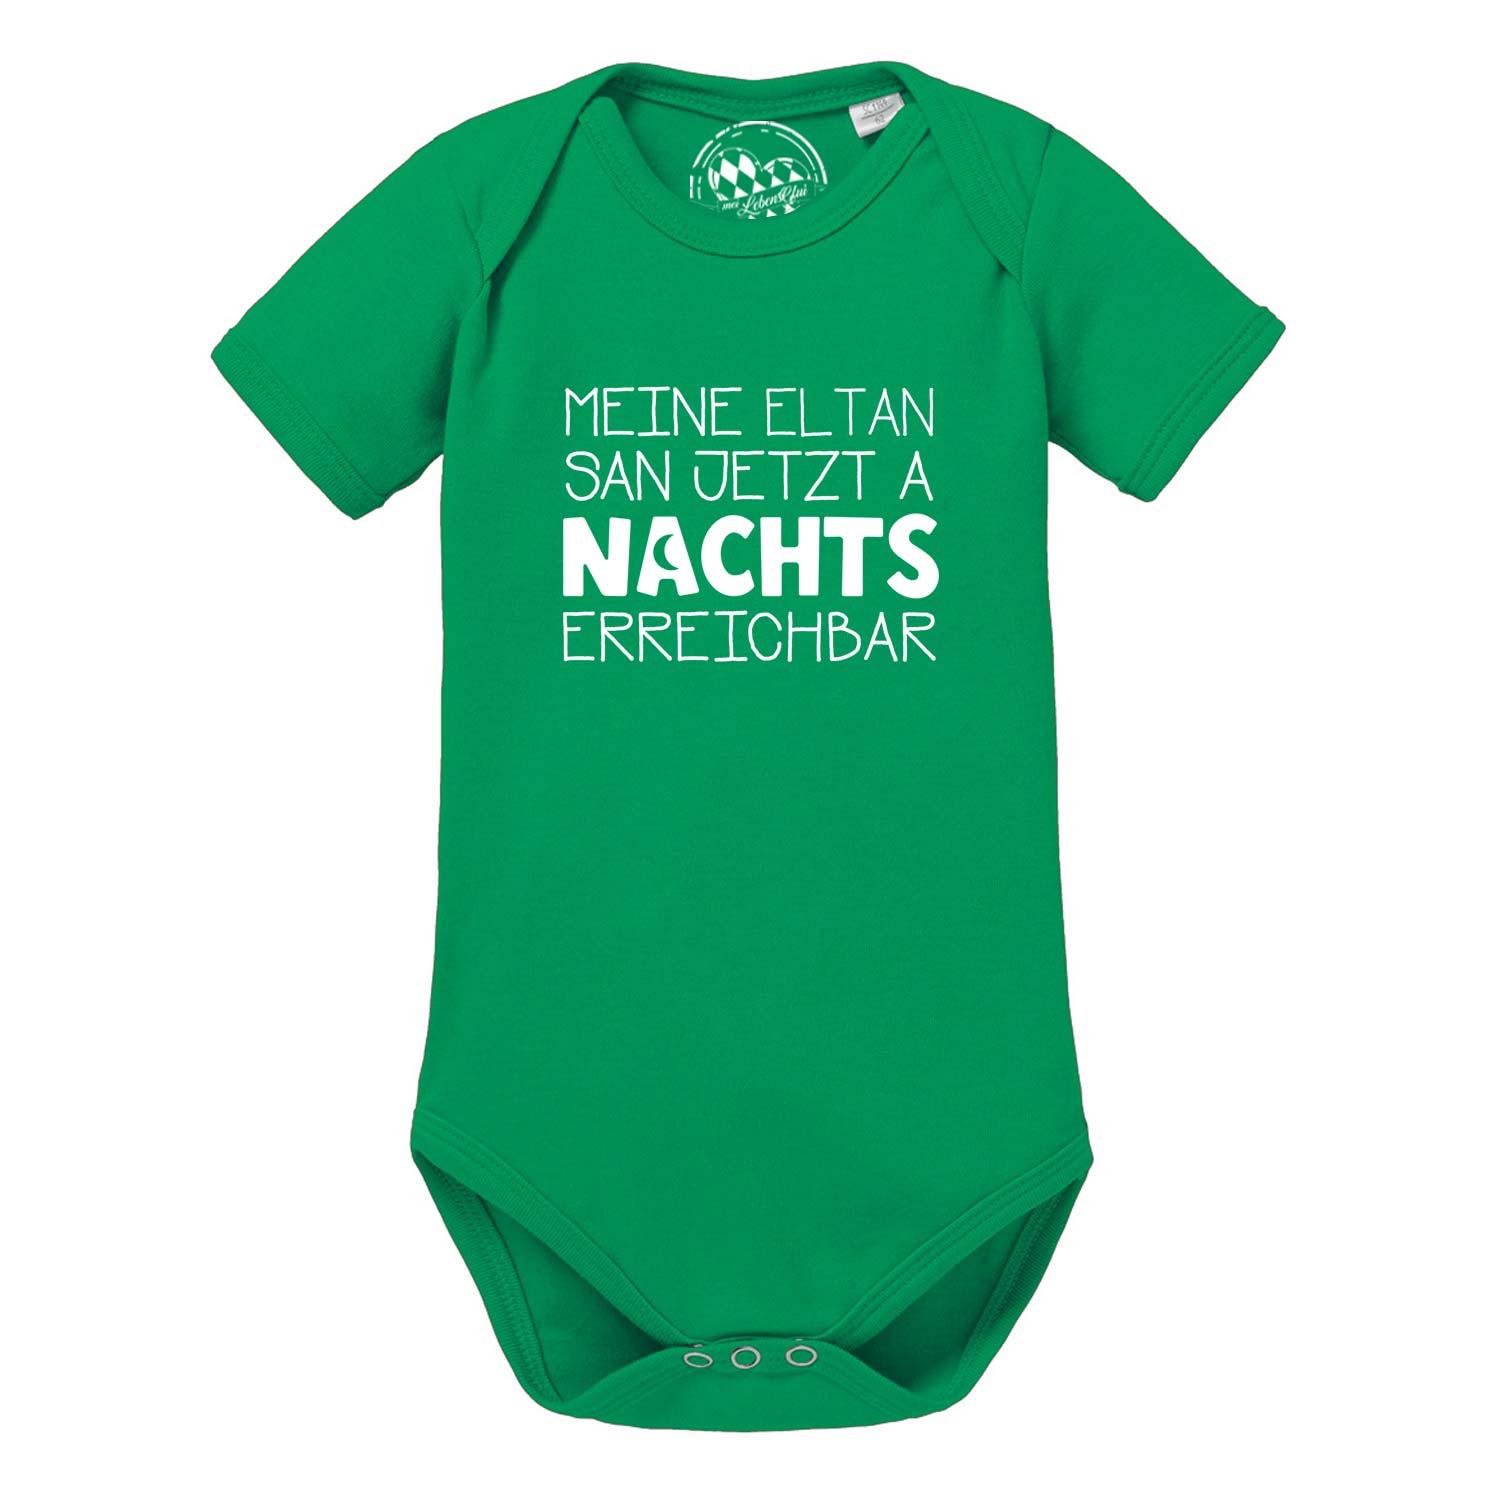 Baby Body "Nachts erreichbar!" - bavariashop - mei LebensGfui